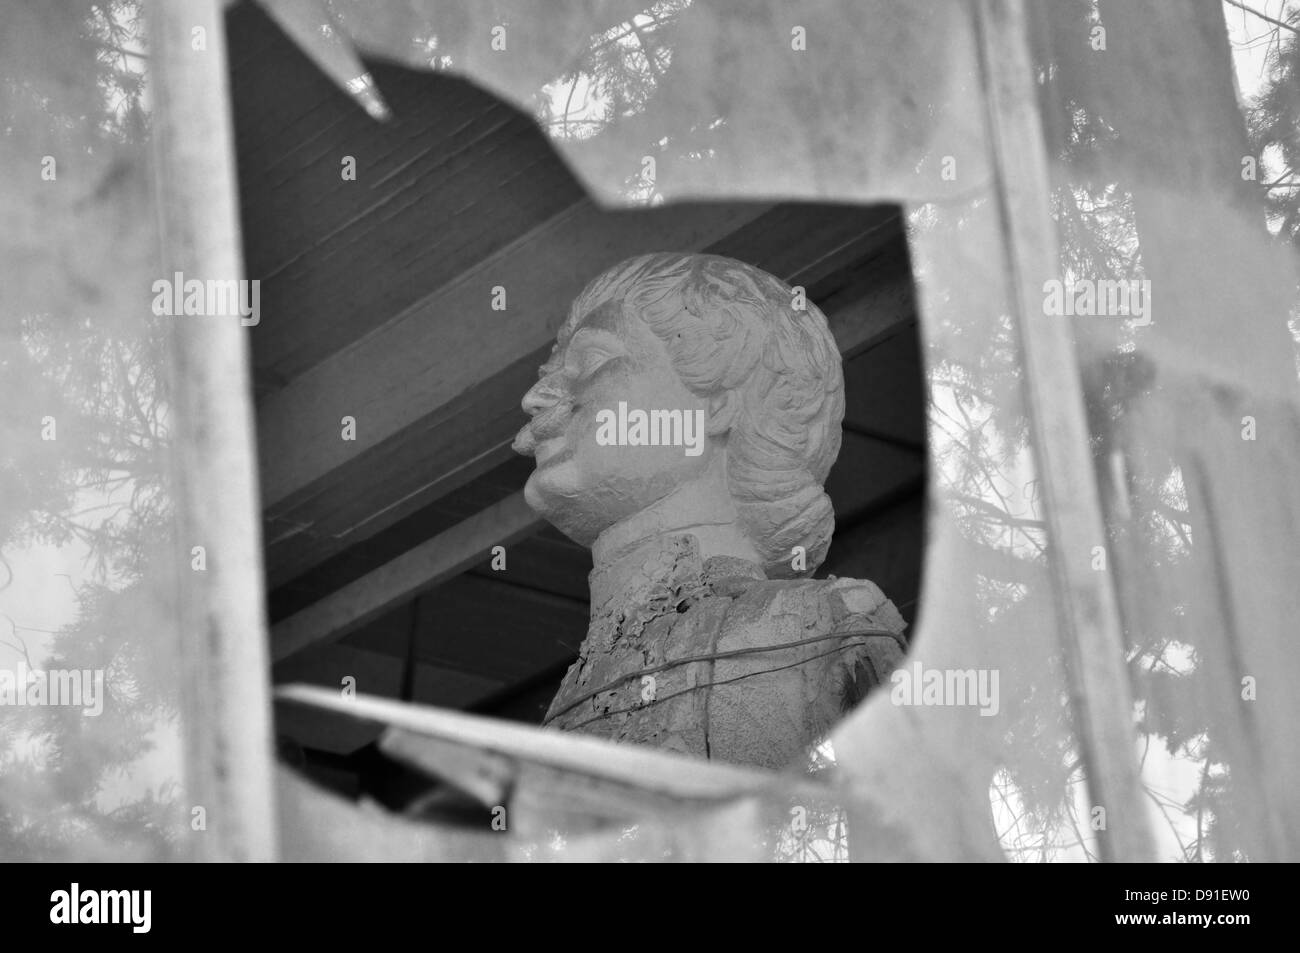 Statue de Rigas Feraios révolutionnaire grecque à travers les vitres brisées de la maison abandonnée de l'artiste Nikolaos Pavlopoulos. Banque D'Images